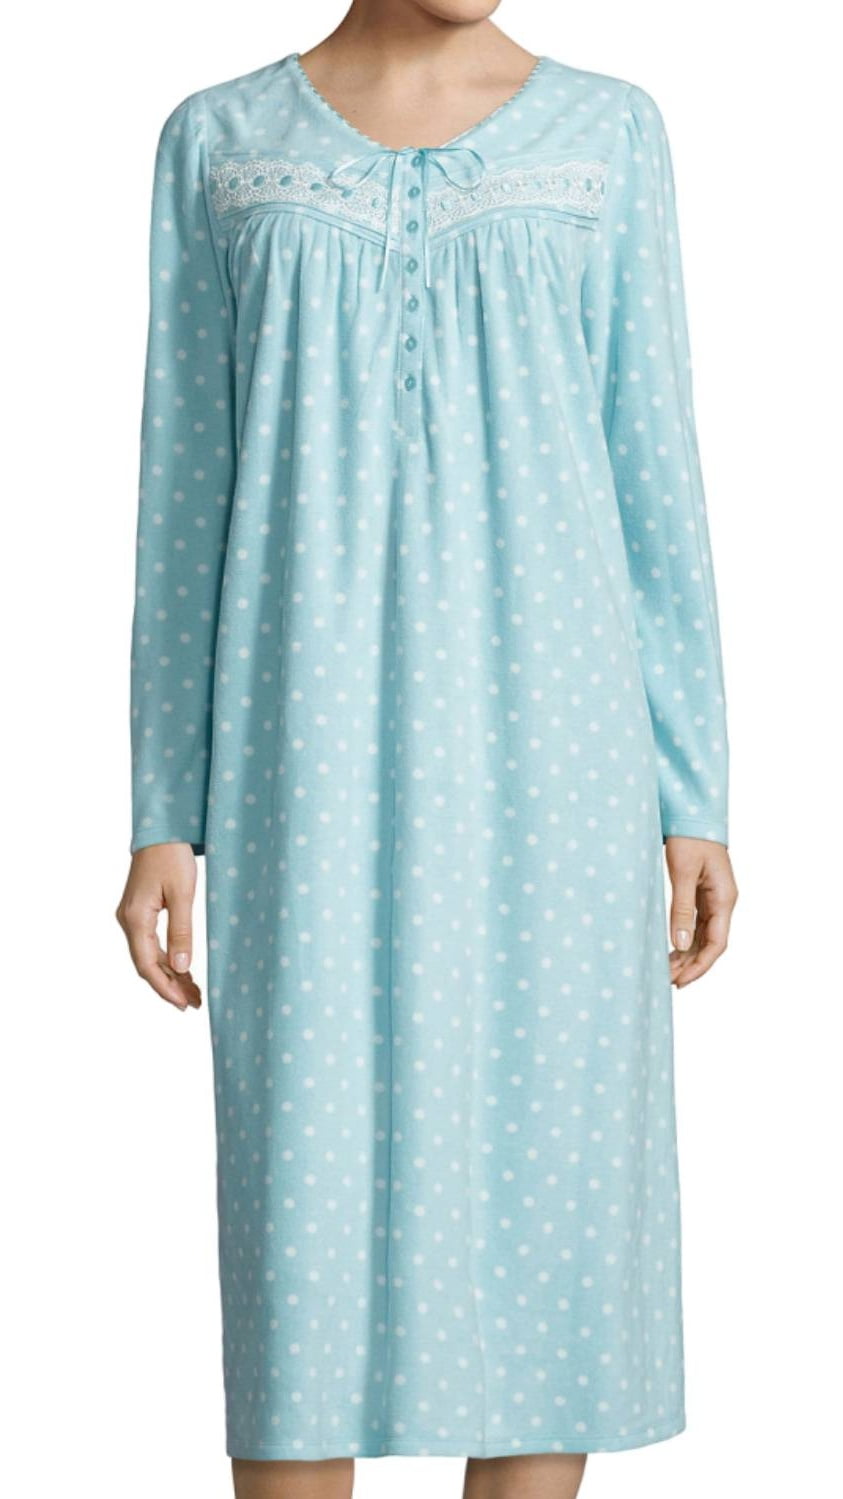 Adonna Women’s Nightgown XL Fleece Med Dot Fleece 